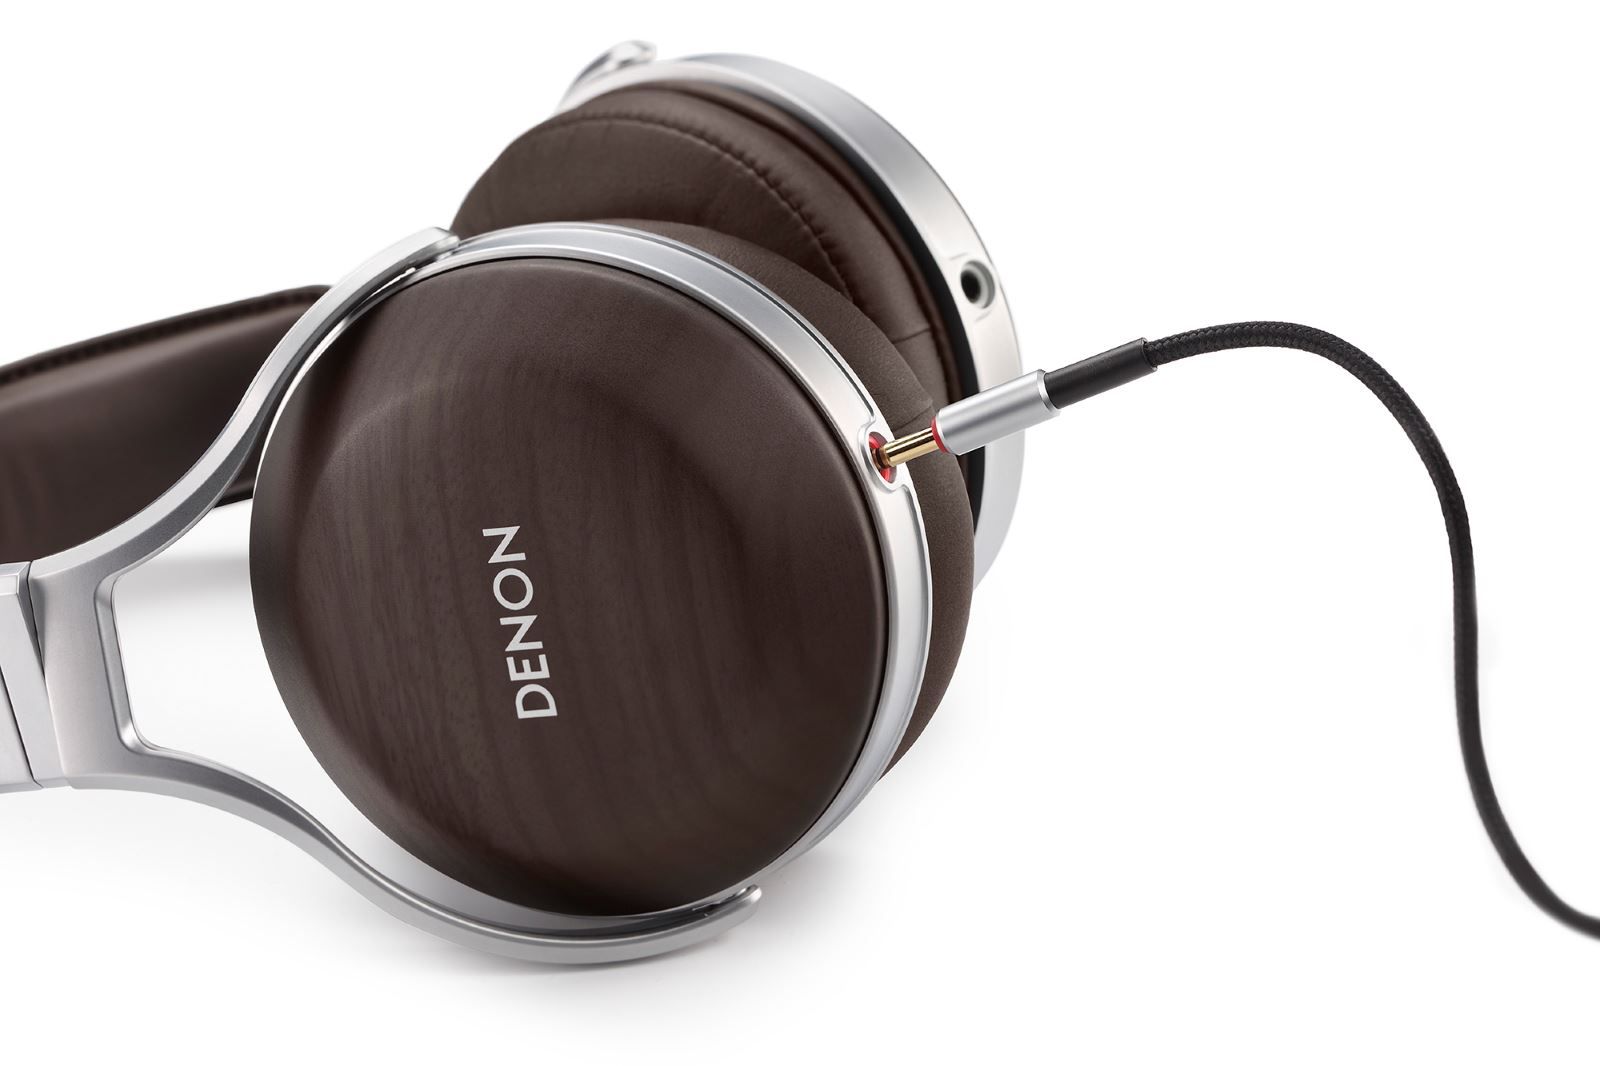 Denon reveals next-gen AH-D5200 aluminum and wood headphones image 1